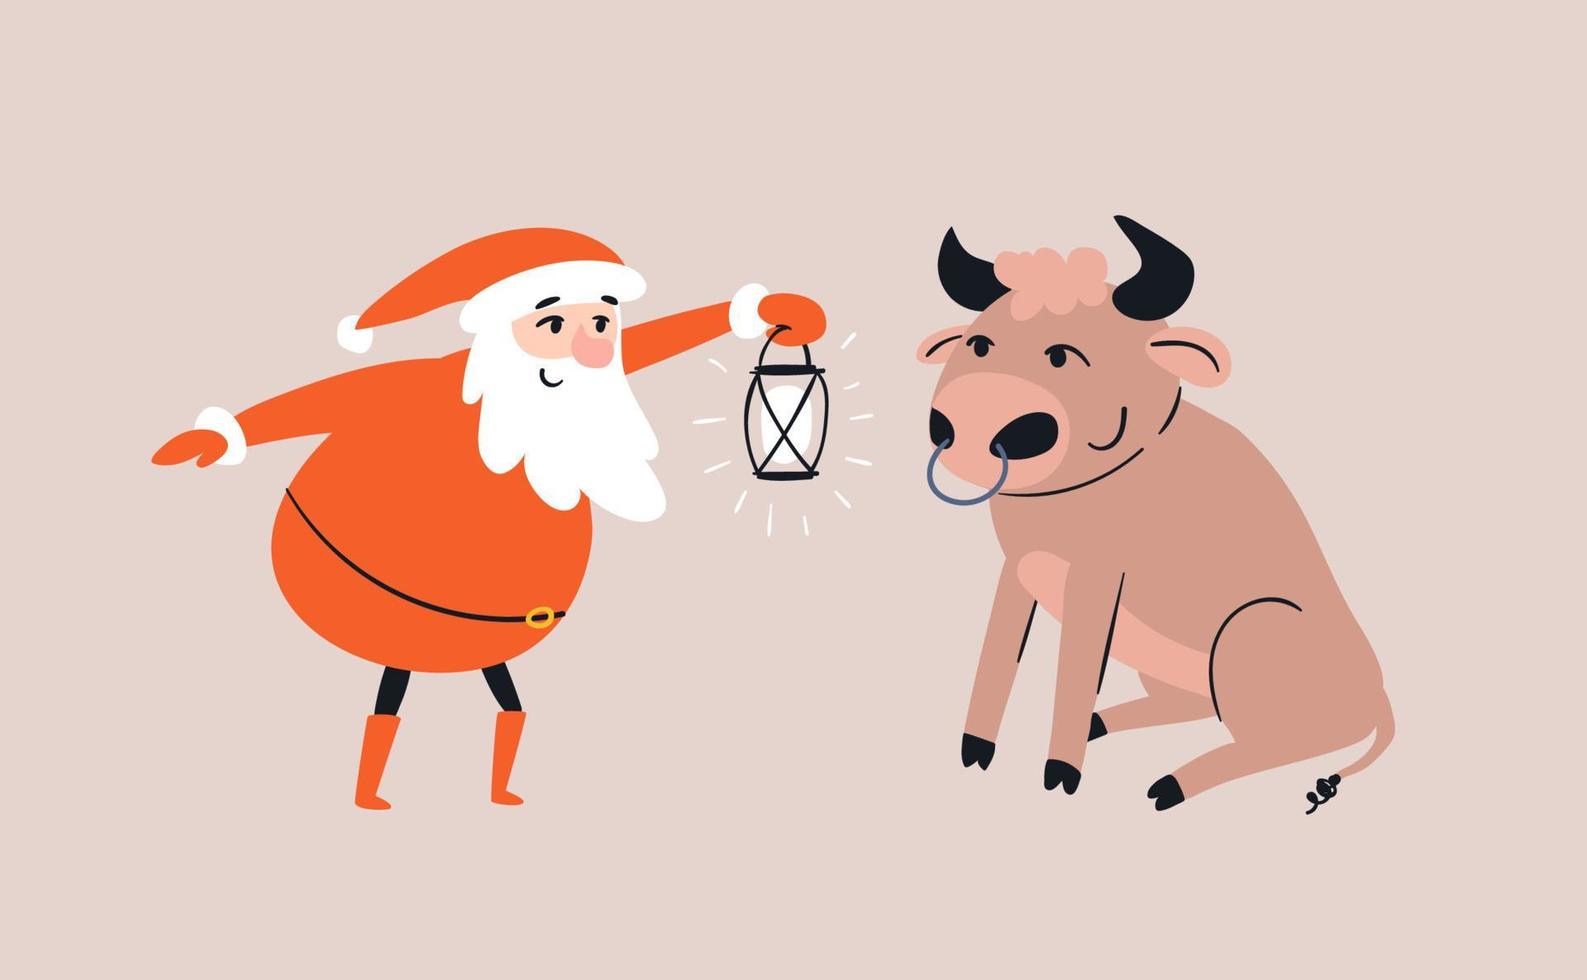 Cartoon-Weihnachtsmann trifft einen Stier, der vor ihm sitzt. Der lächelnde Weihnachtsmann beleuchtet einen niedlichen Stier mit einer lustigen Frisur mit einer Laterne. handgezeichnete gekritzelgeschichte. isolierte Illustration des Vektorbestands. vektor